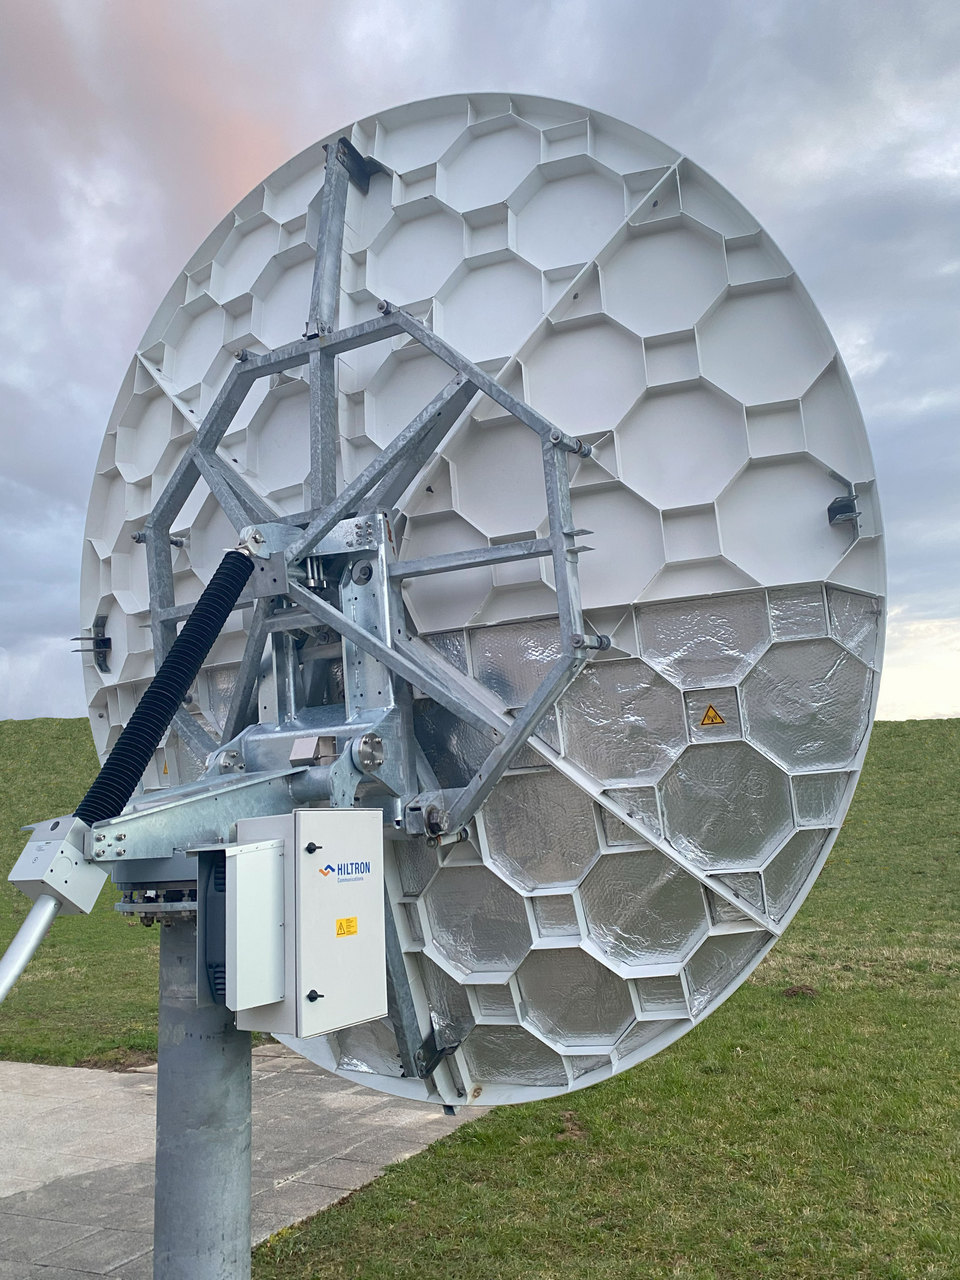 новый модернизируемый в полевых условиях комплект привода Hiltron на базе HMAM для антенны спутниковой связи CPI 2385